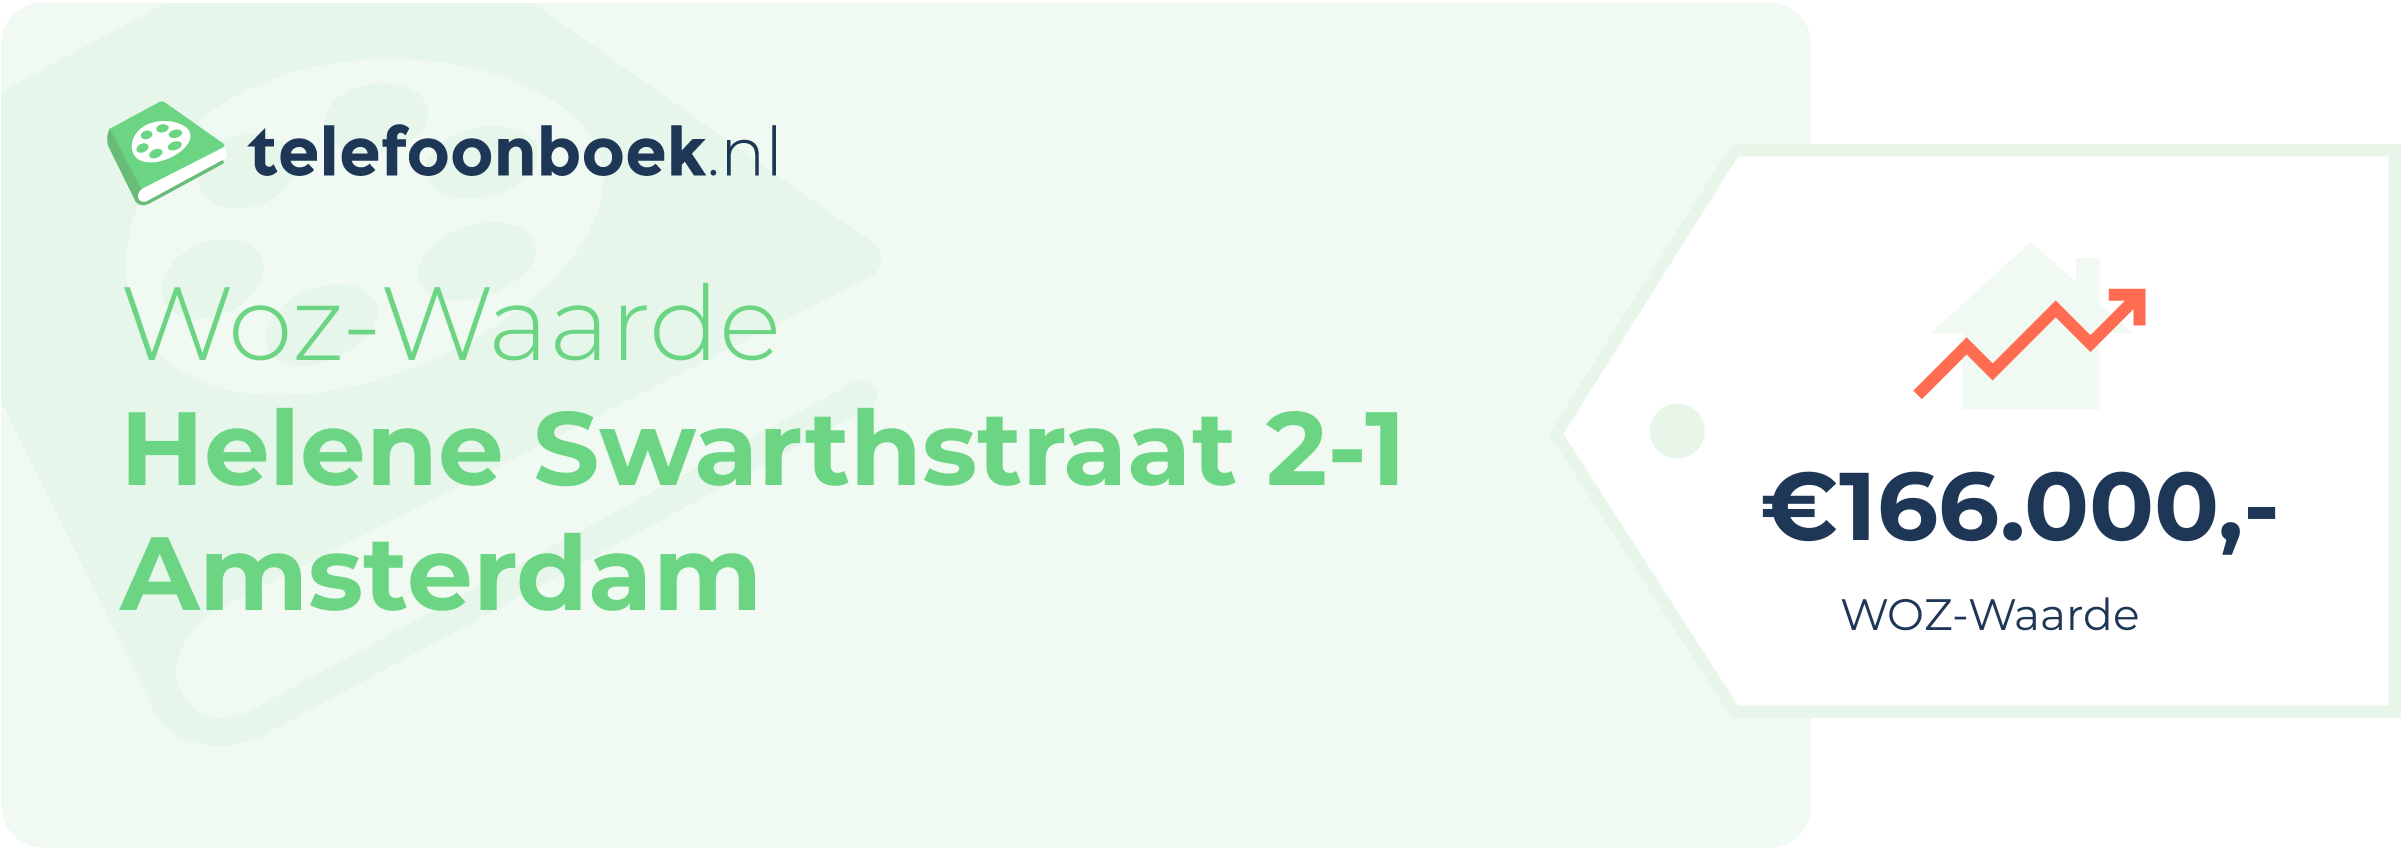 WOZ-waarde Helene Swarthstraat 2-1 Amsterdam